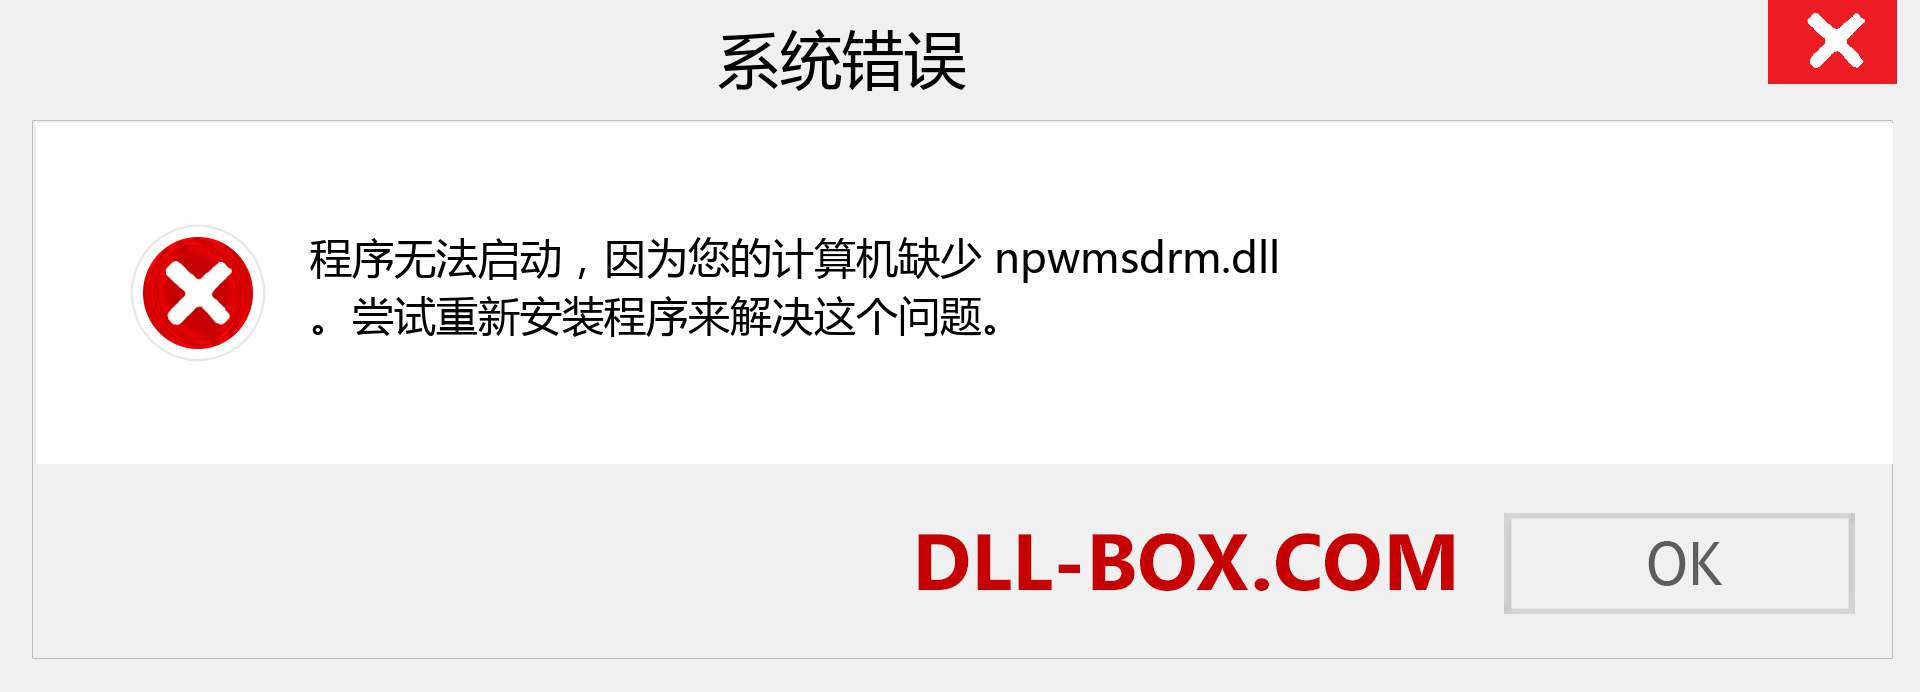 npwmsdrm.dll 文件丢失？。 适用于 Windows 7、8、10 的下载 - 修复 Windows、照片、图像上的 npwmsdrm dll 丢失错误